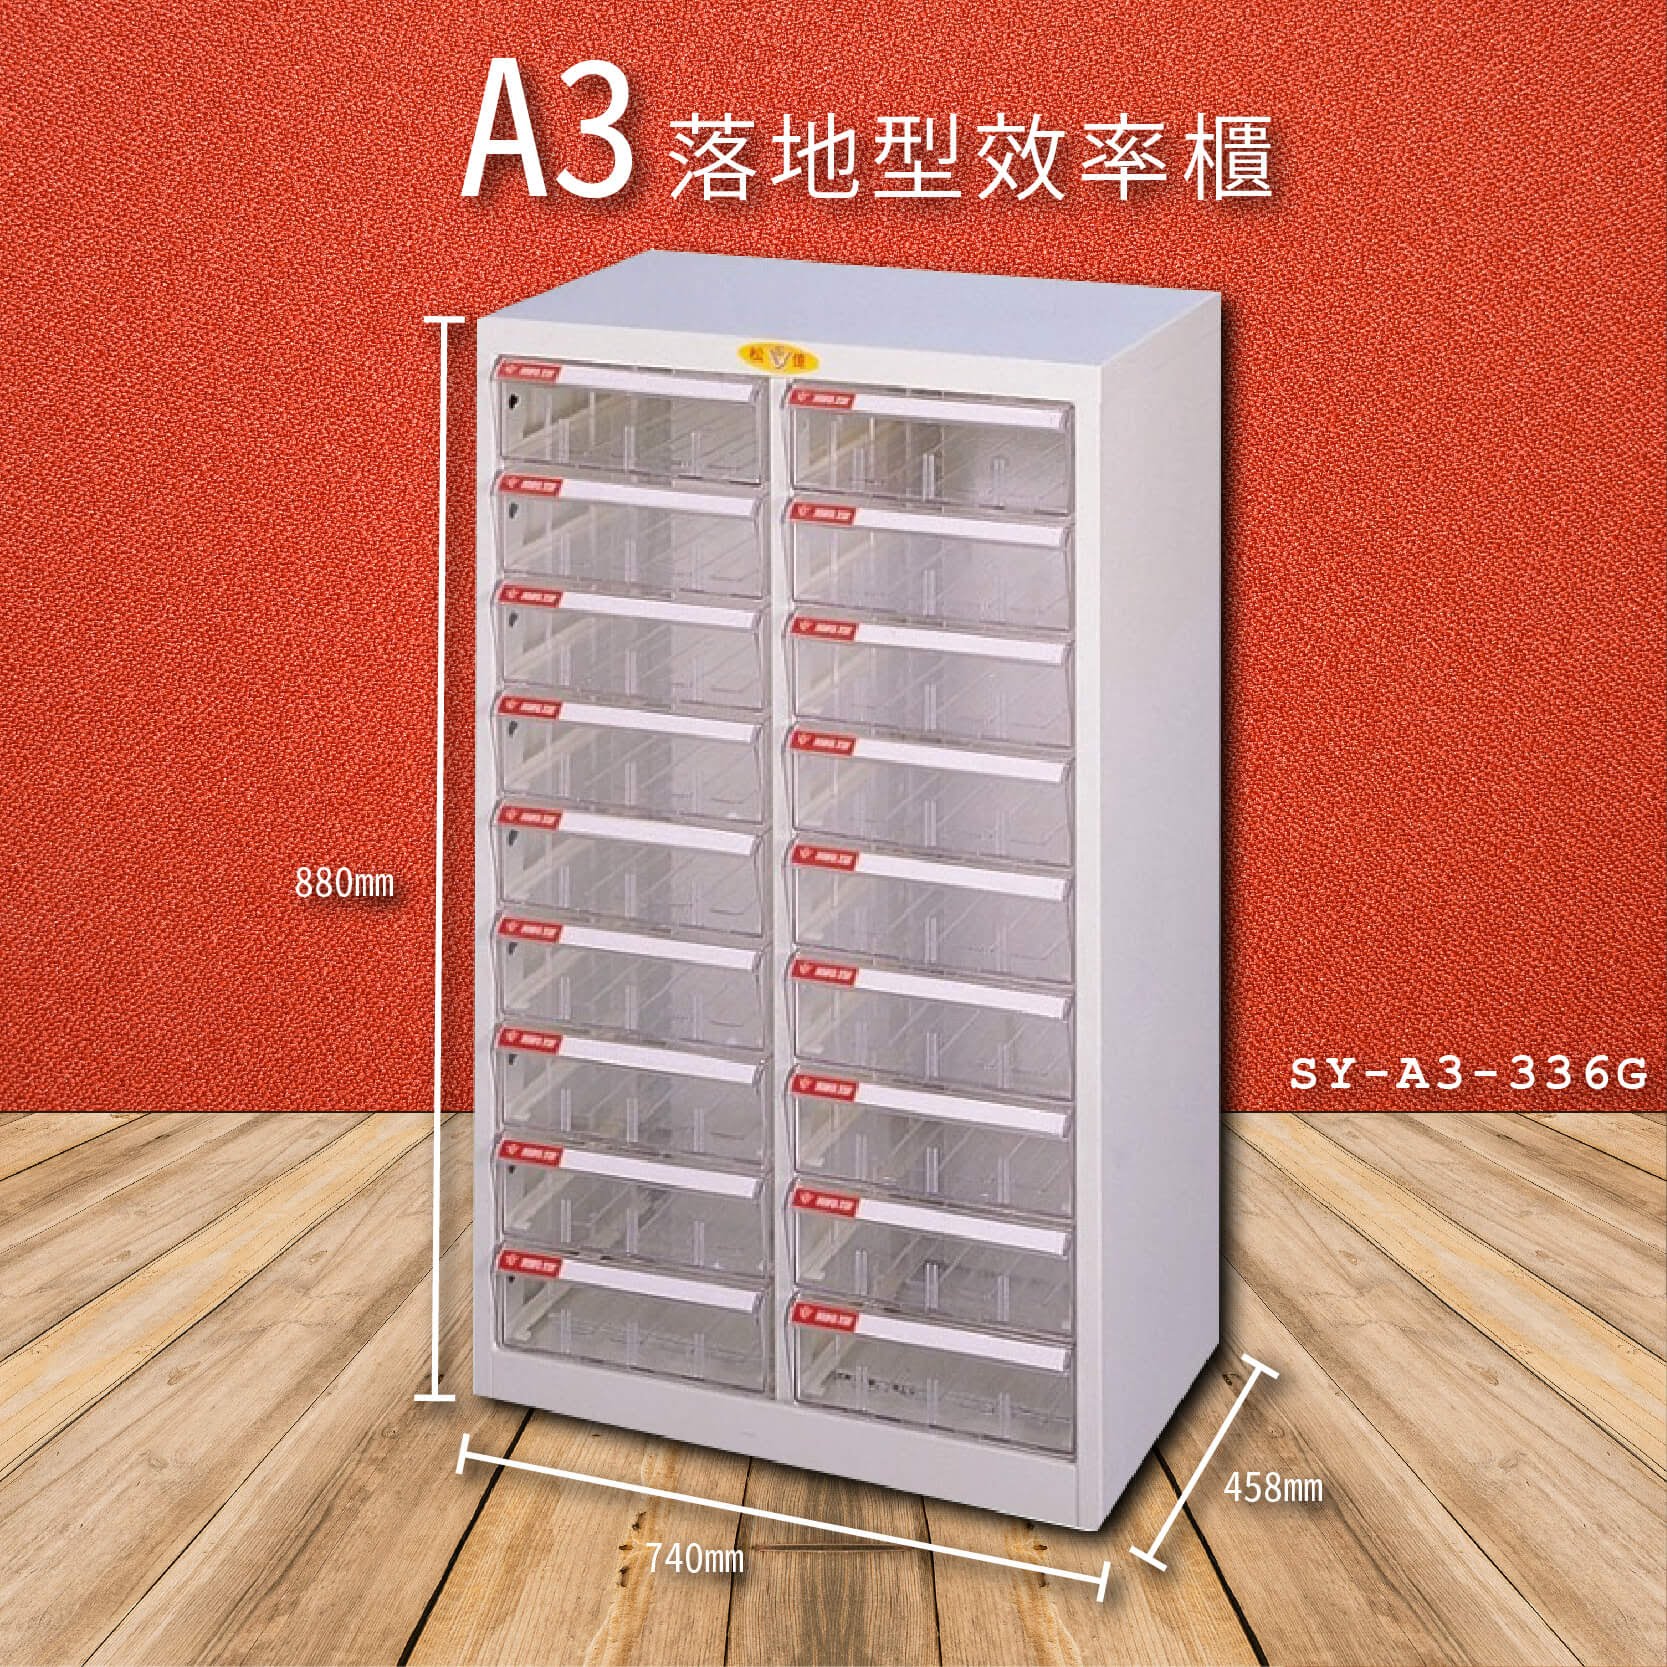 官方推薦【大富】SY-A3-336G A3落地型效率櫃 收納櫃 置物櫃 文件櫃 公文櫃 直立櫃 收納置物櫃 台灣製造